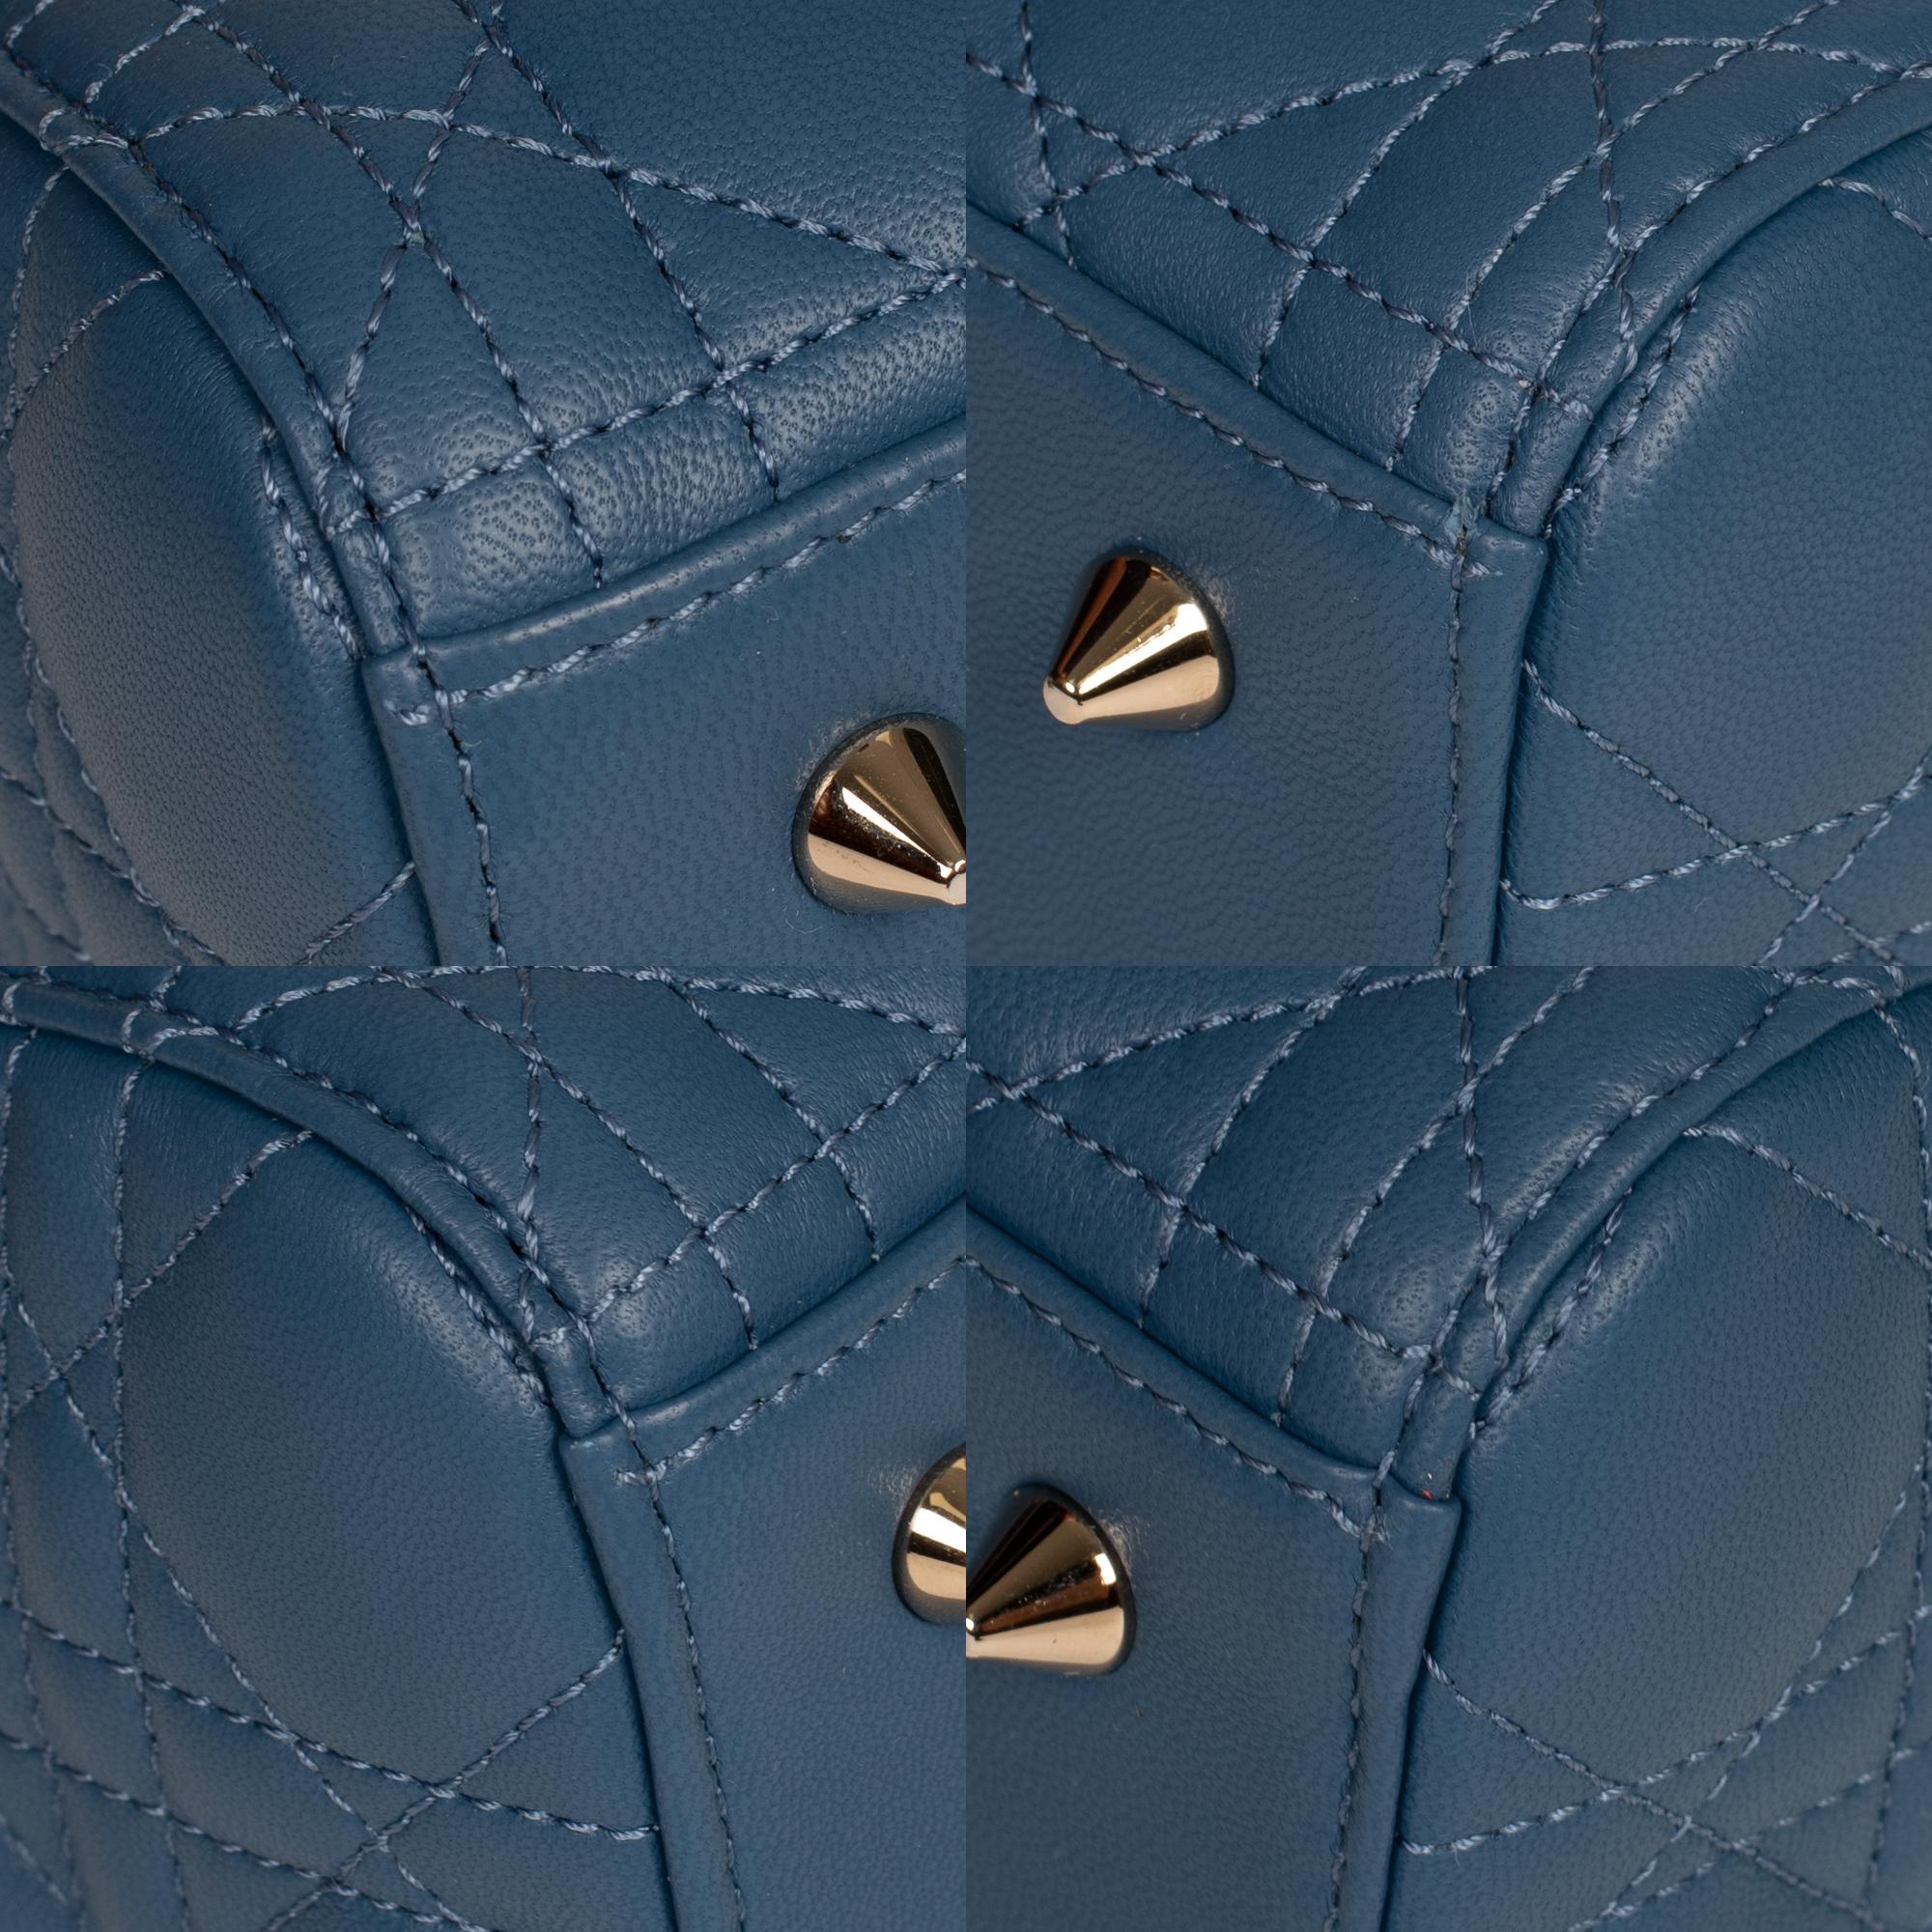  Christian Dior Lady Dior MM (Medium size) handbag in blue cannage leather, PHW 5